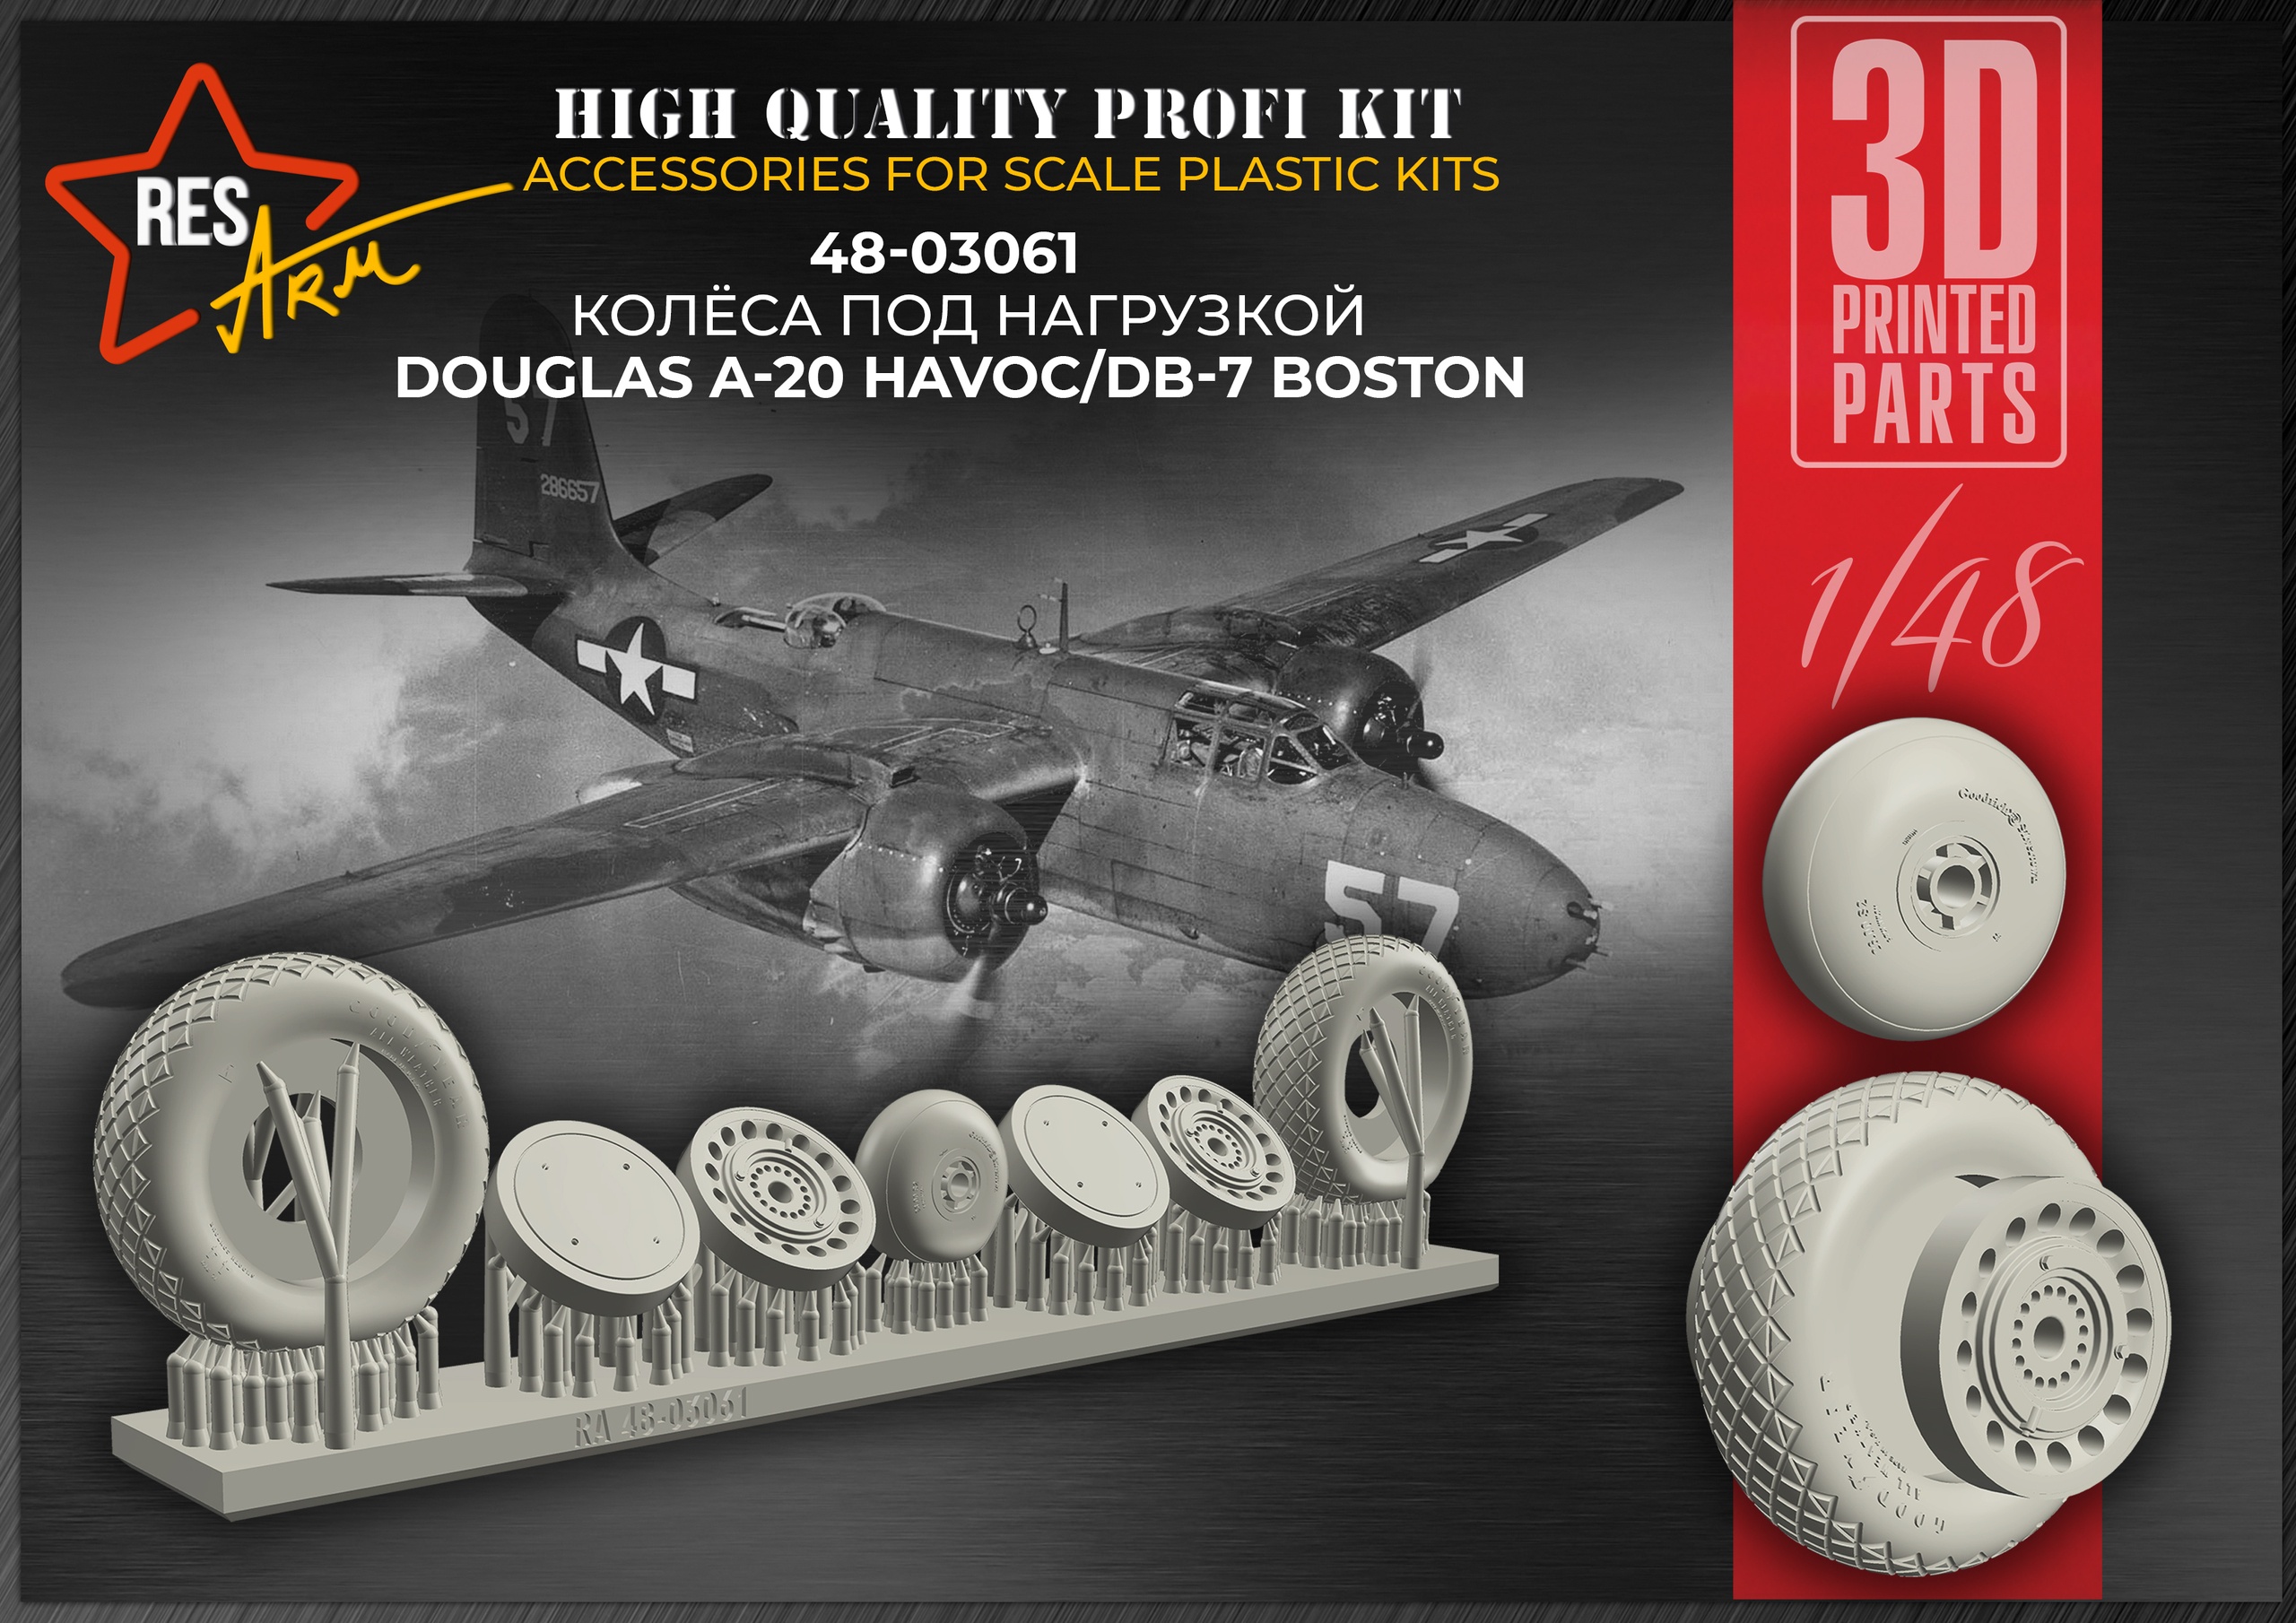 Дополнения из смолы 1/48 Колеса Douglas A-20 Havoc/DB-7 Boston (под нагрузкой) (RESArm)